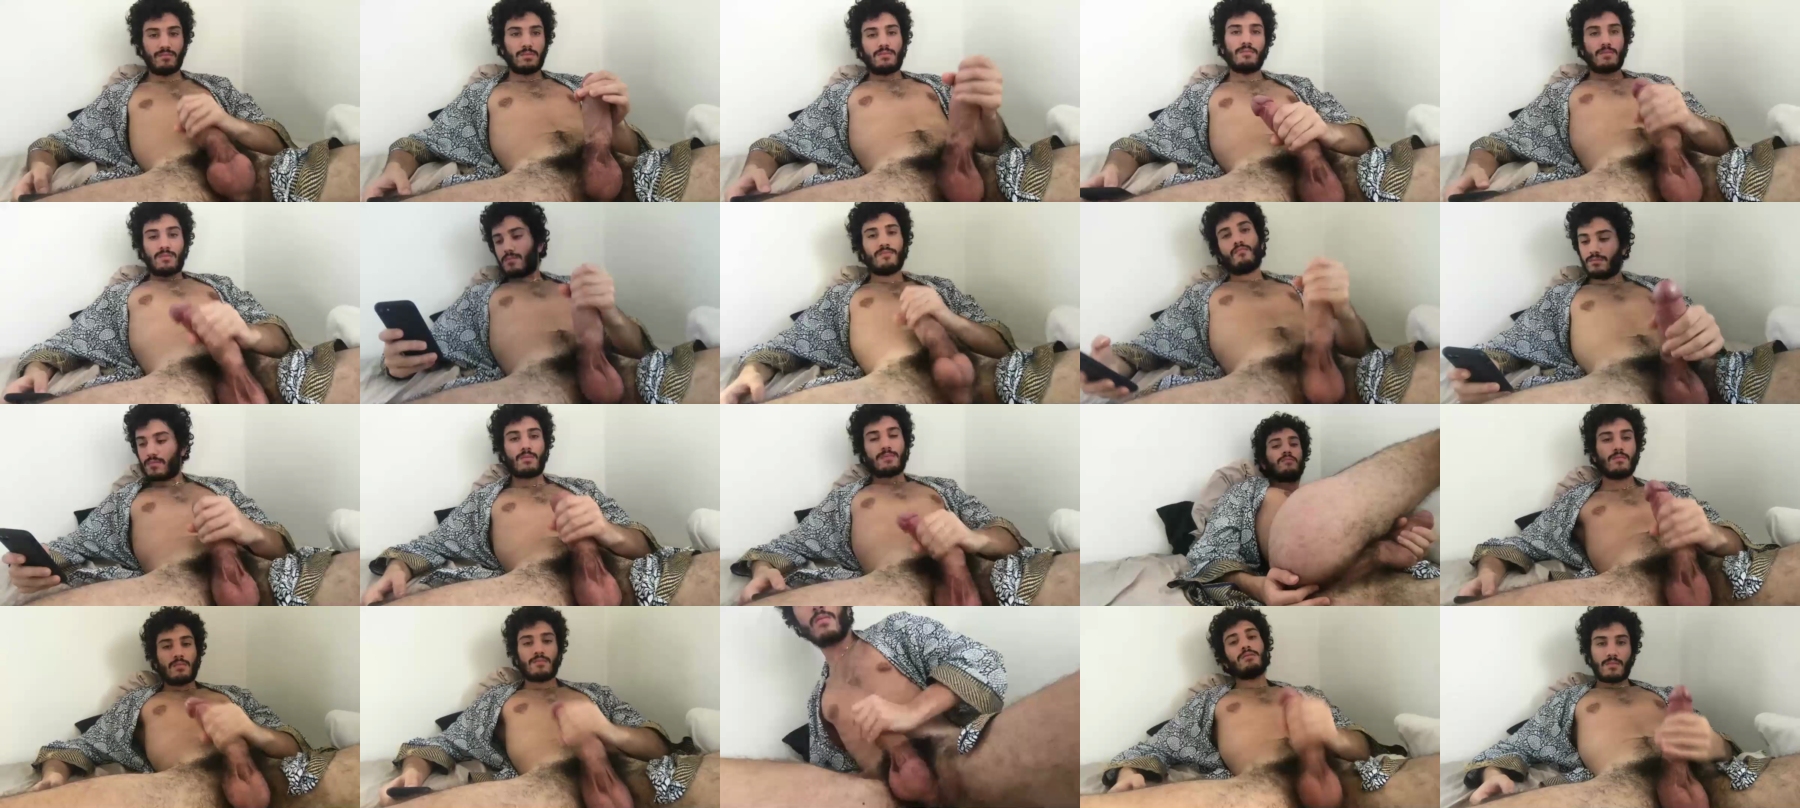 Lao_Tsu  02-11-2021 Male Nude